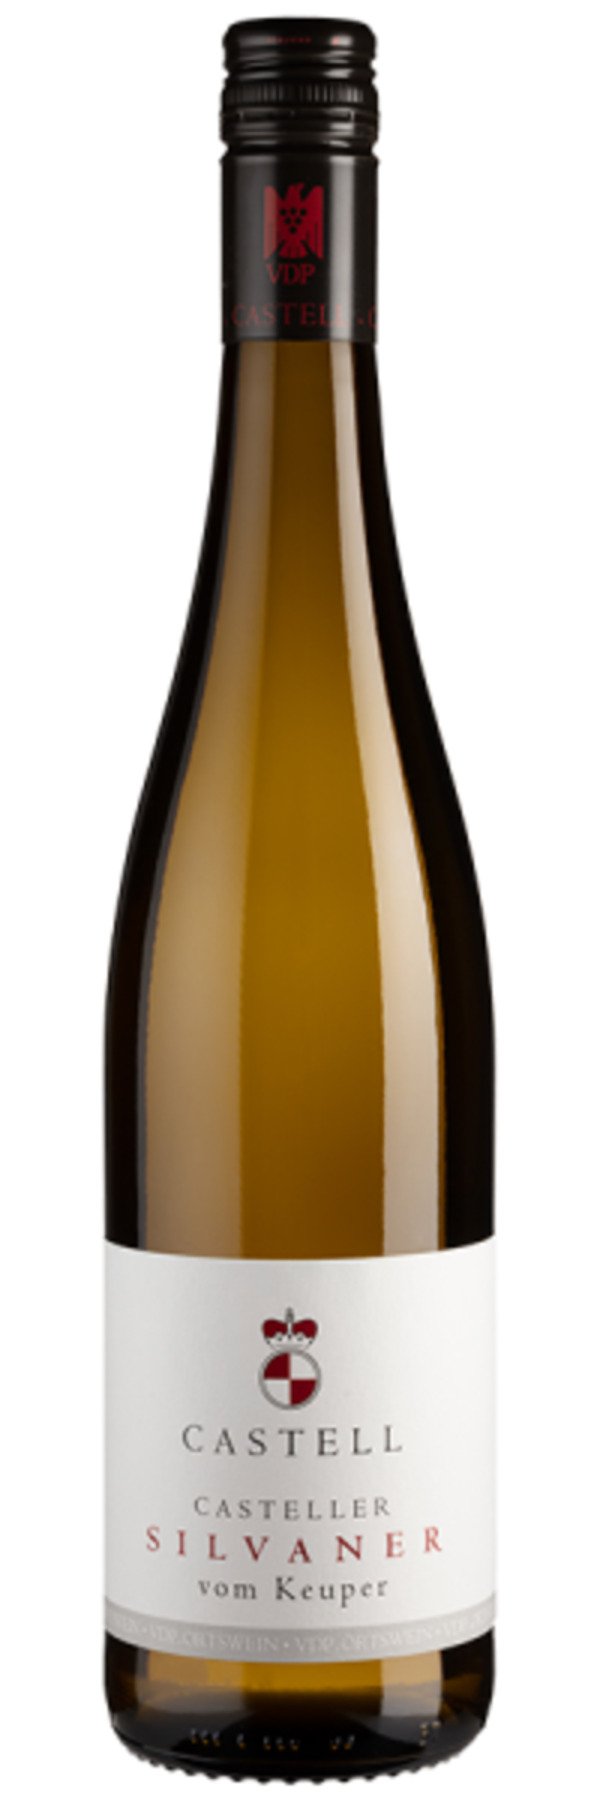 Casteller Silvaner vom Keuper - 2020 - Castell-Castell - Deutscher Weißwein  von Weinfreunde ansehen! | Weißweine